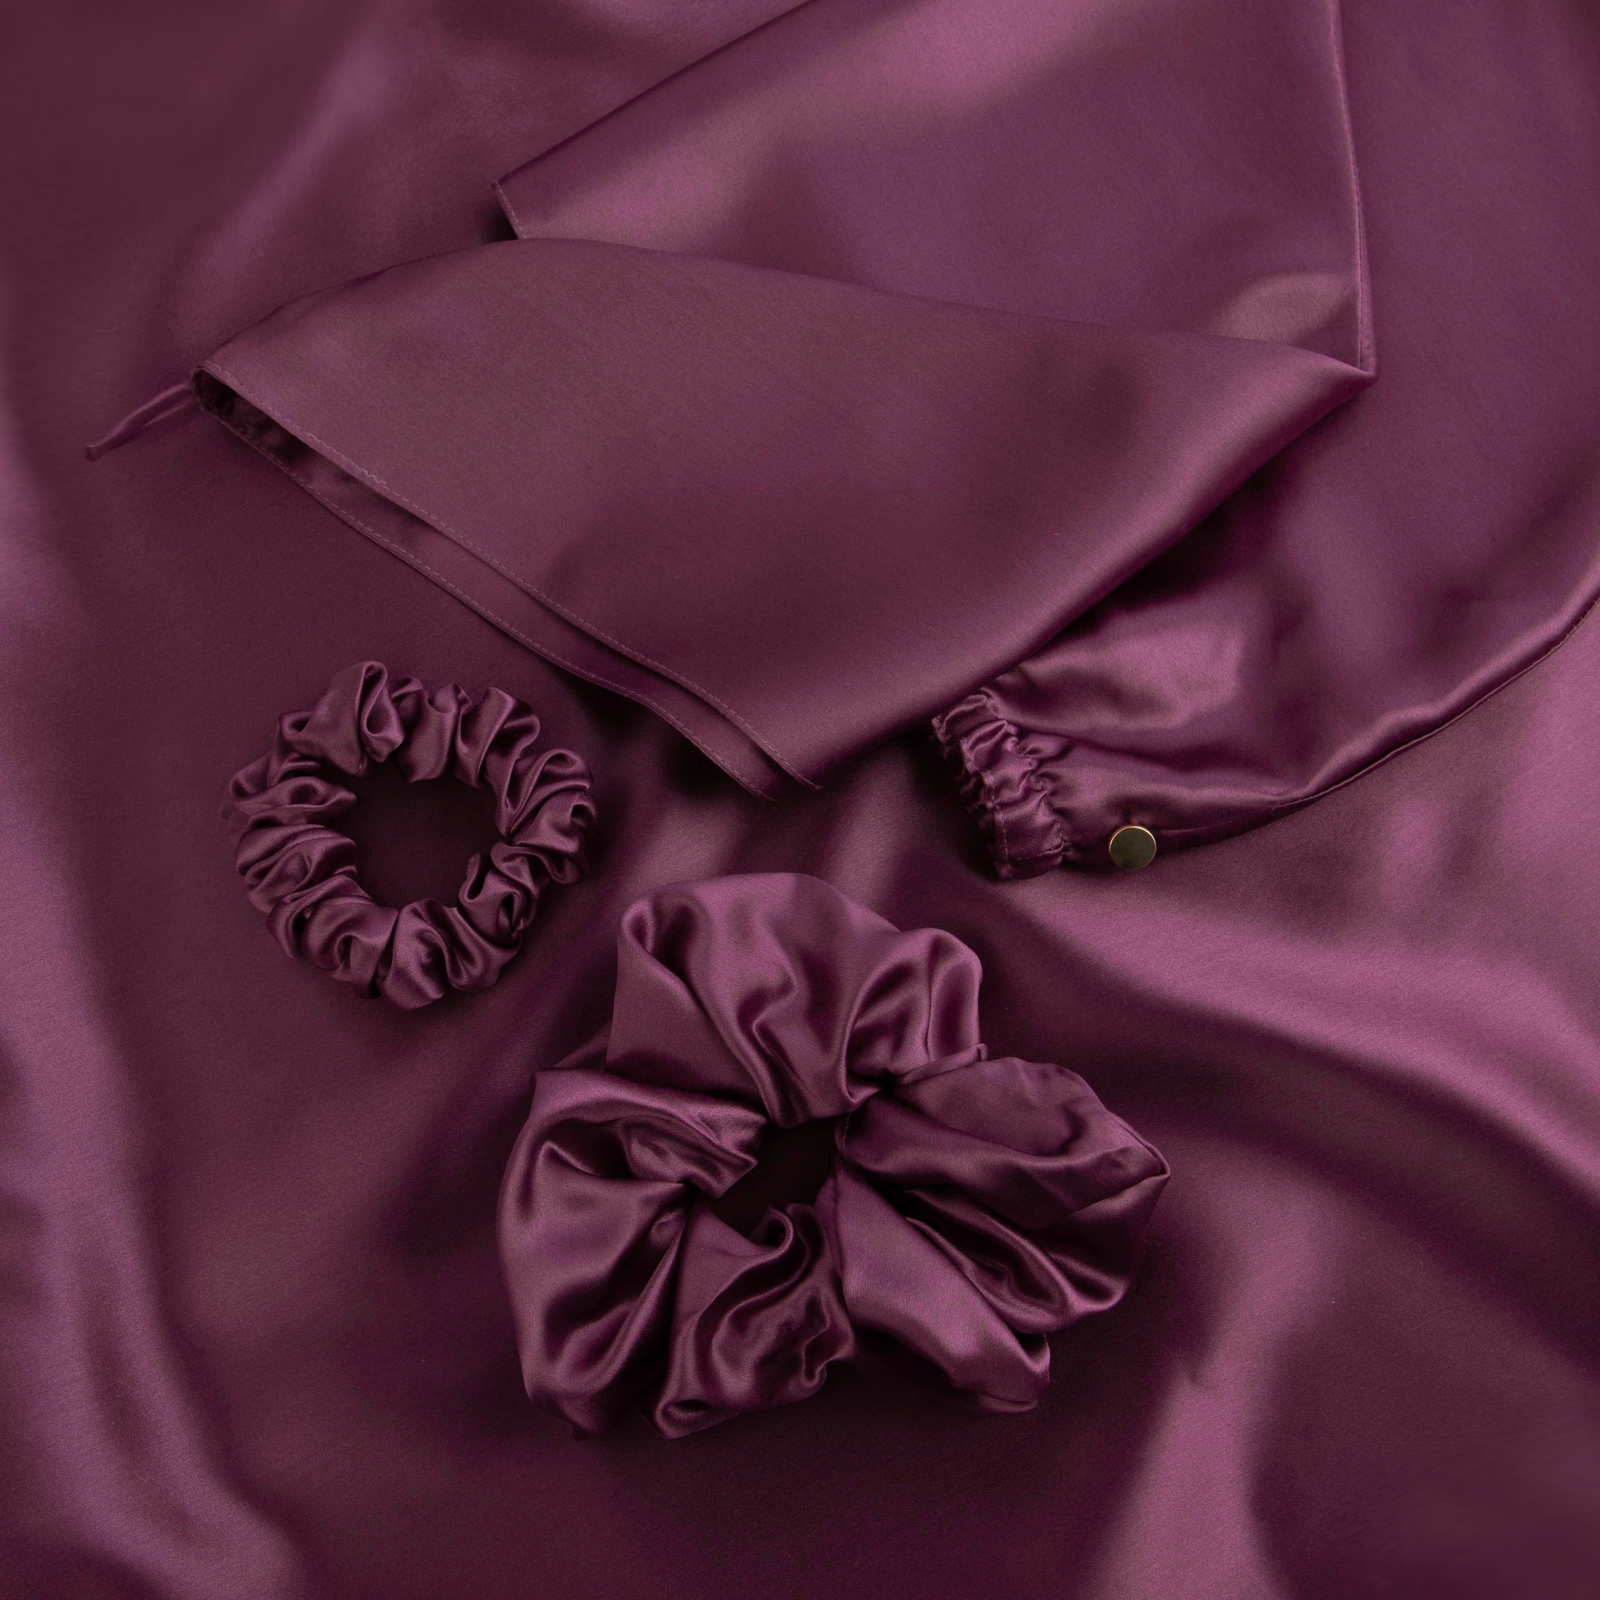 фото Подарочный набор из шелка soft box purple наволочка чалма для волос резинки для волос